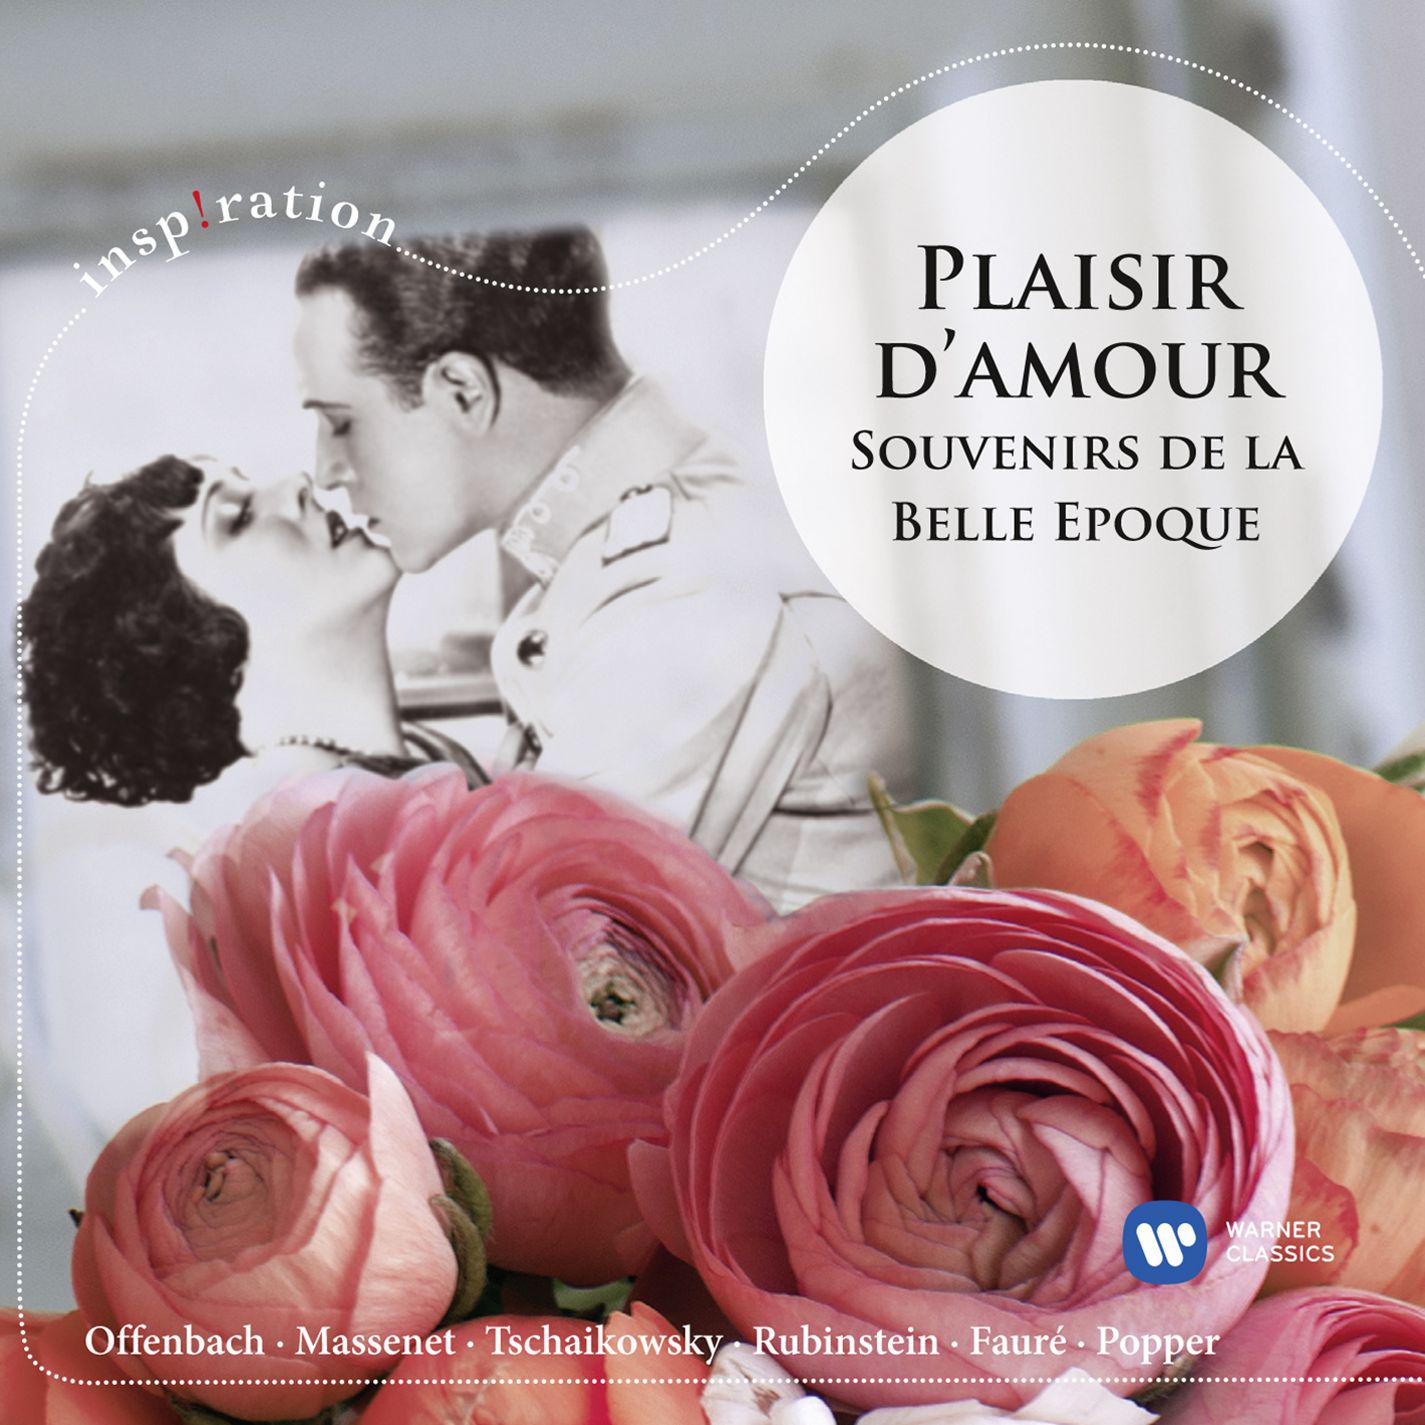 Plaisir d'amour: Souvenirs de la Belle Epoque专辑